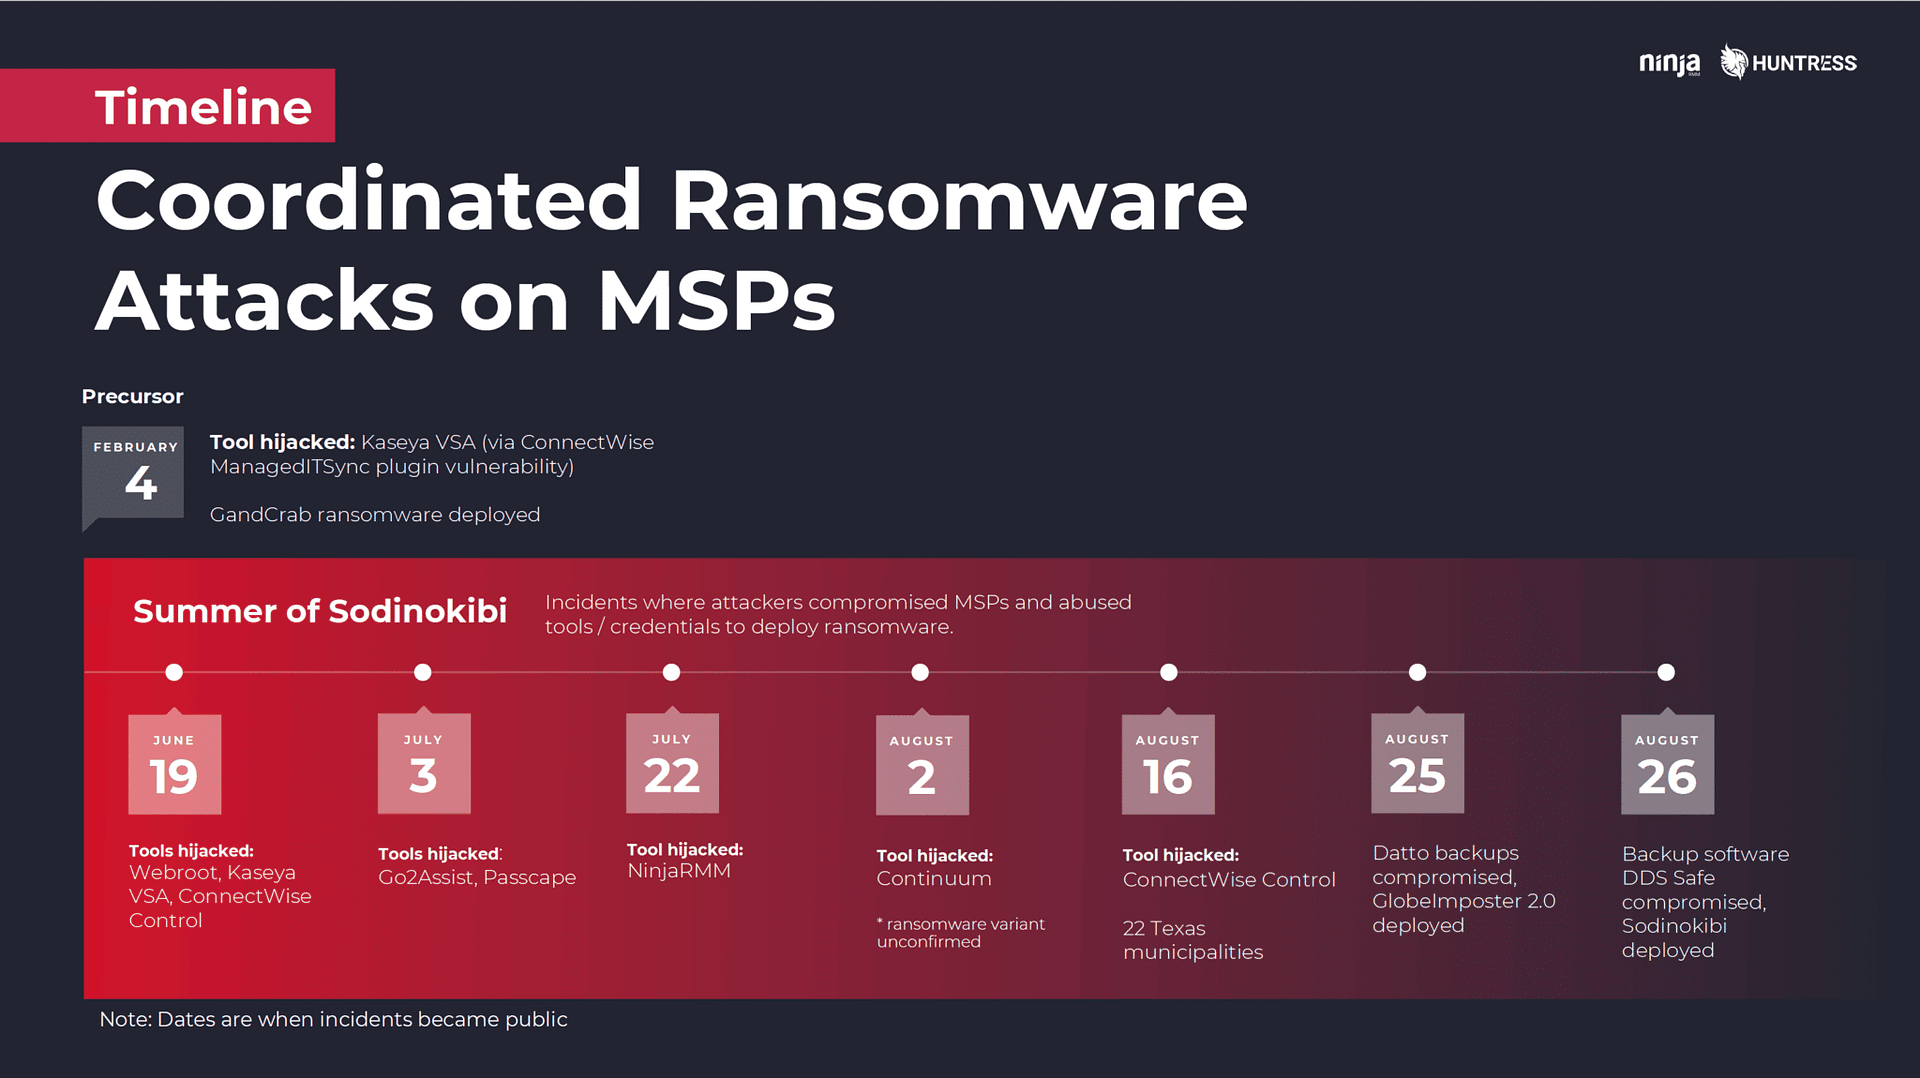 attaques par ransomware des les clients de msp en 2019